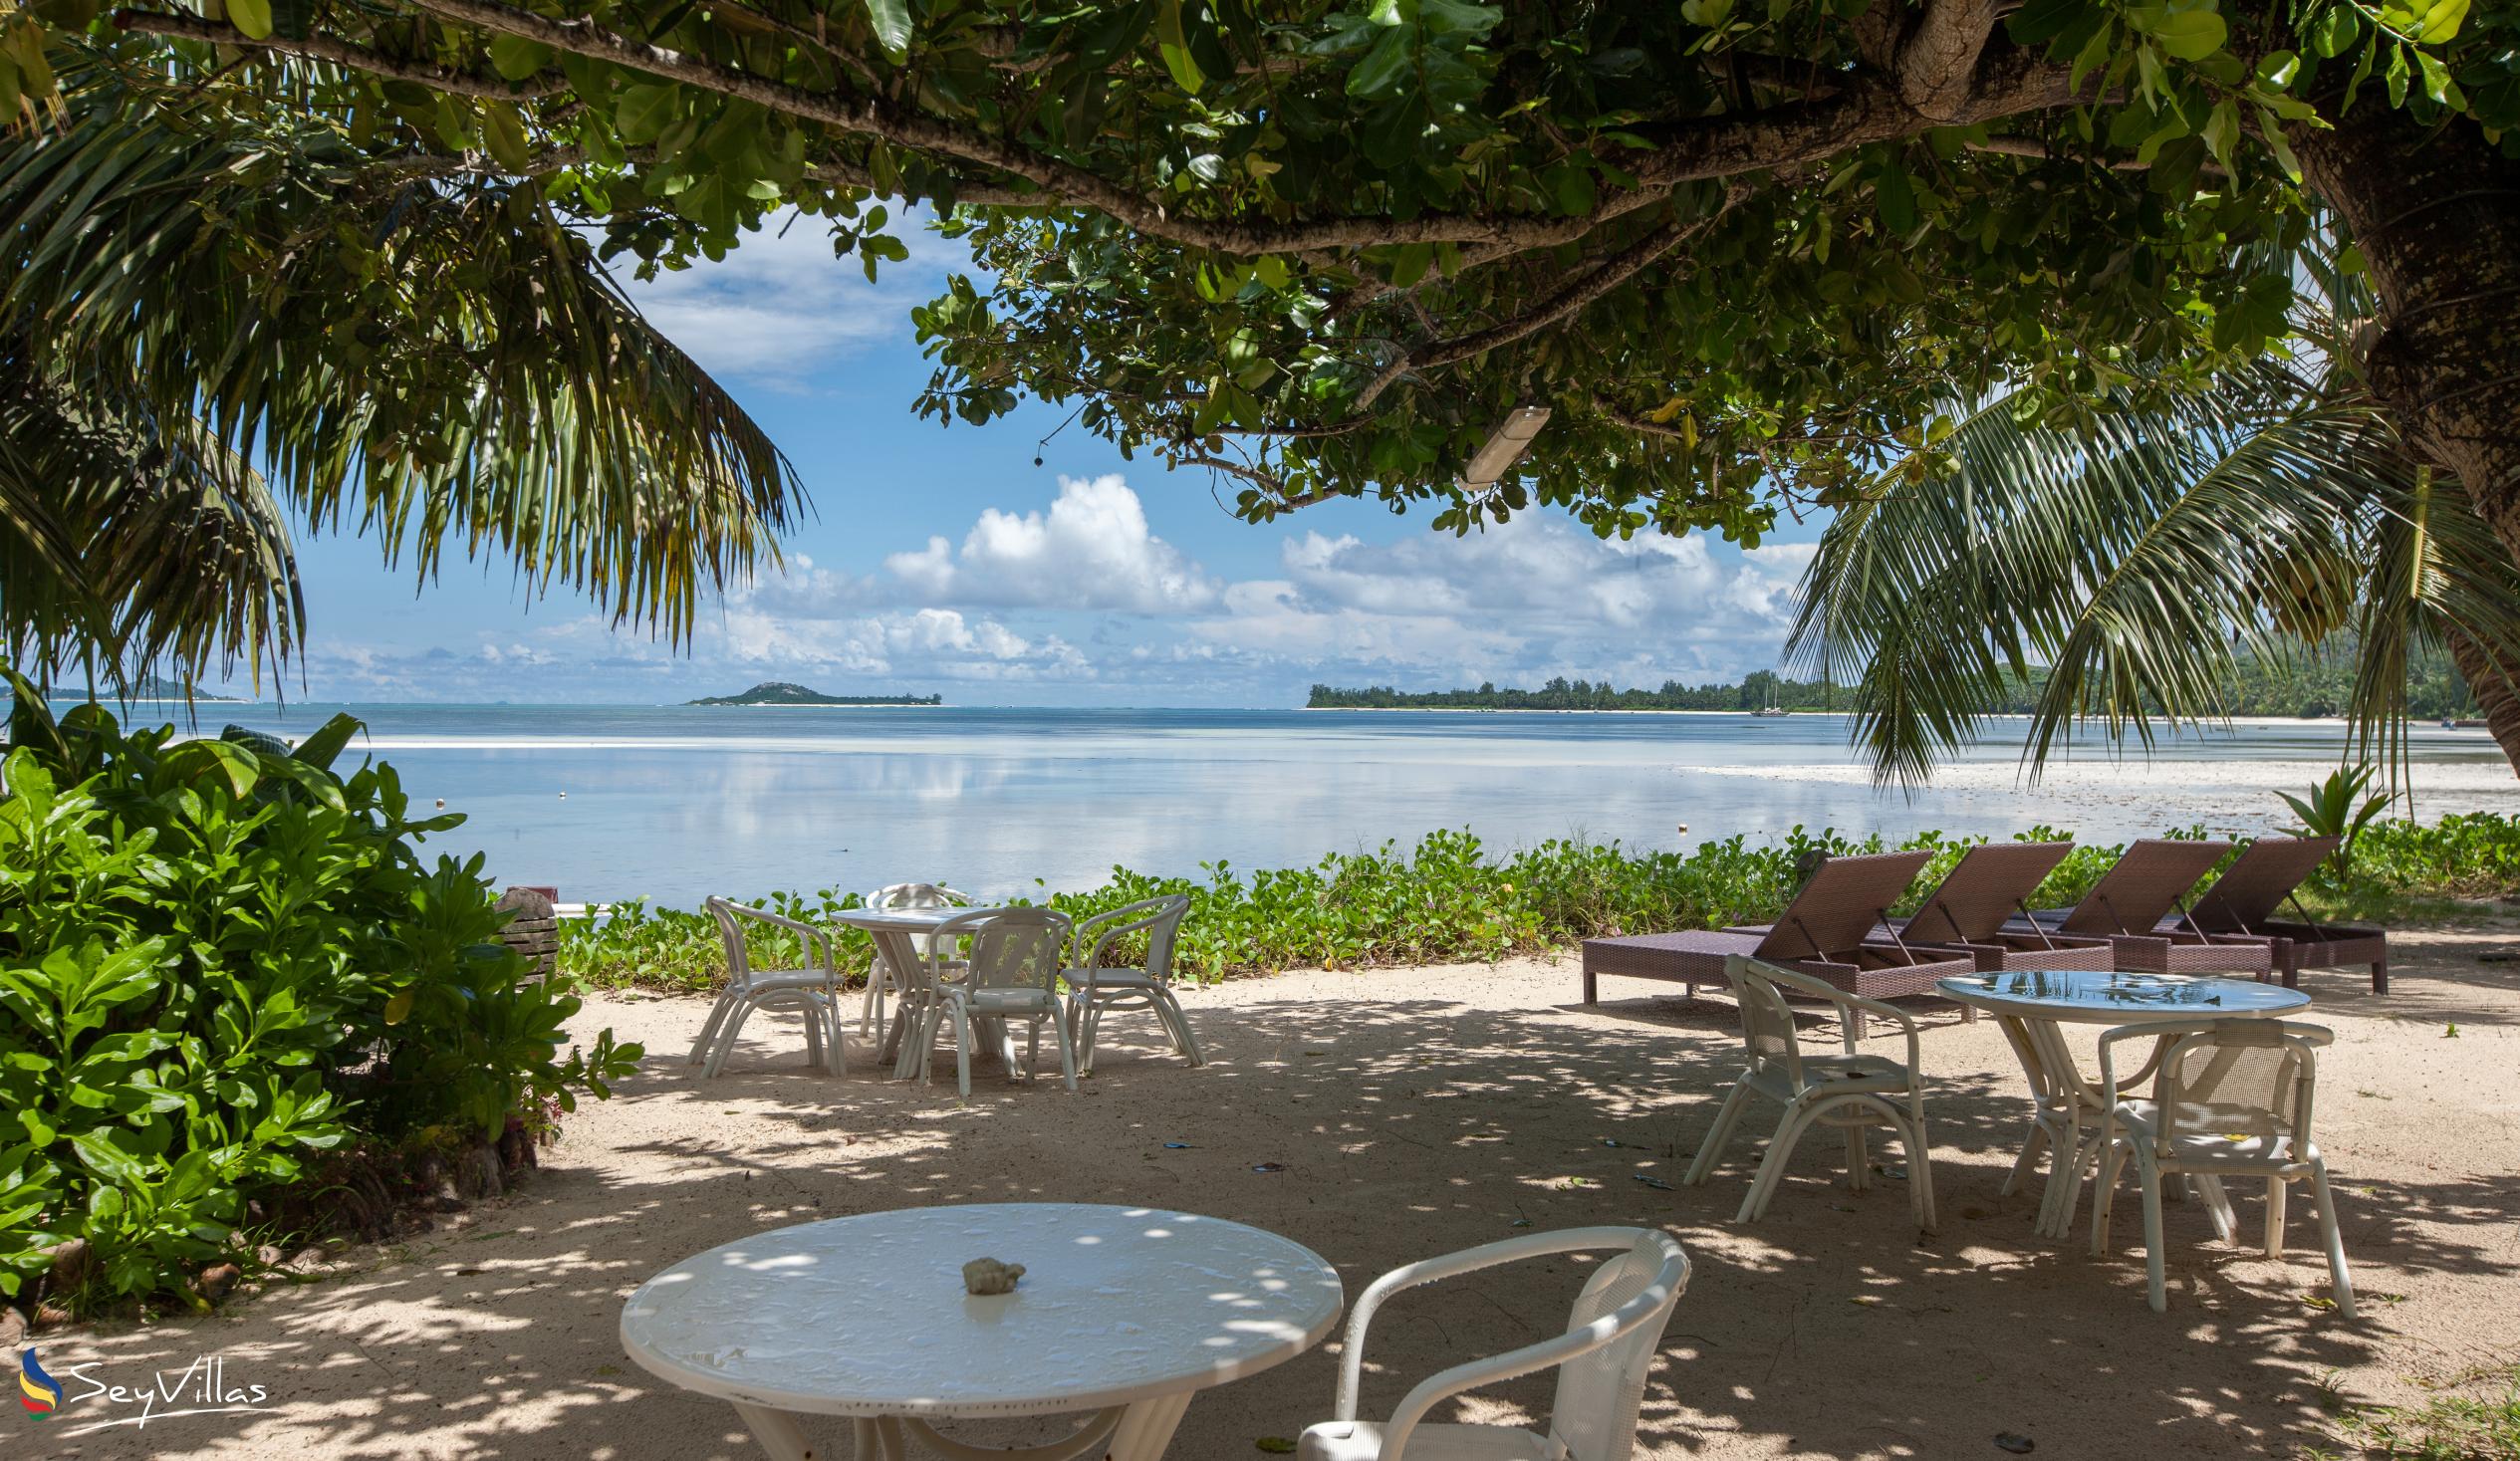 Foto 6: Palm Beach Hotel - Aussenbereich - Praslin (Seychellen)